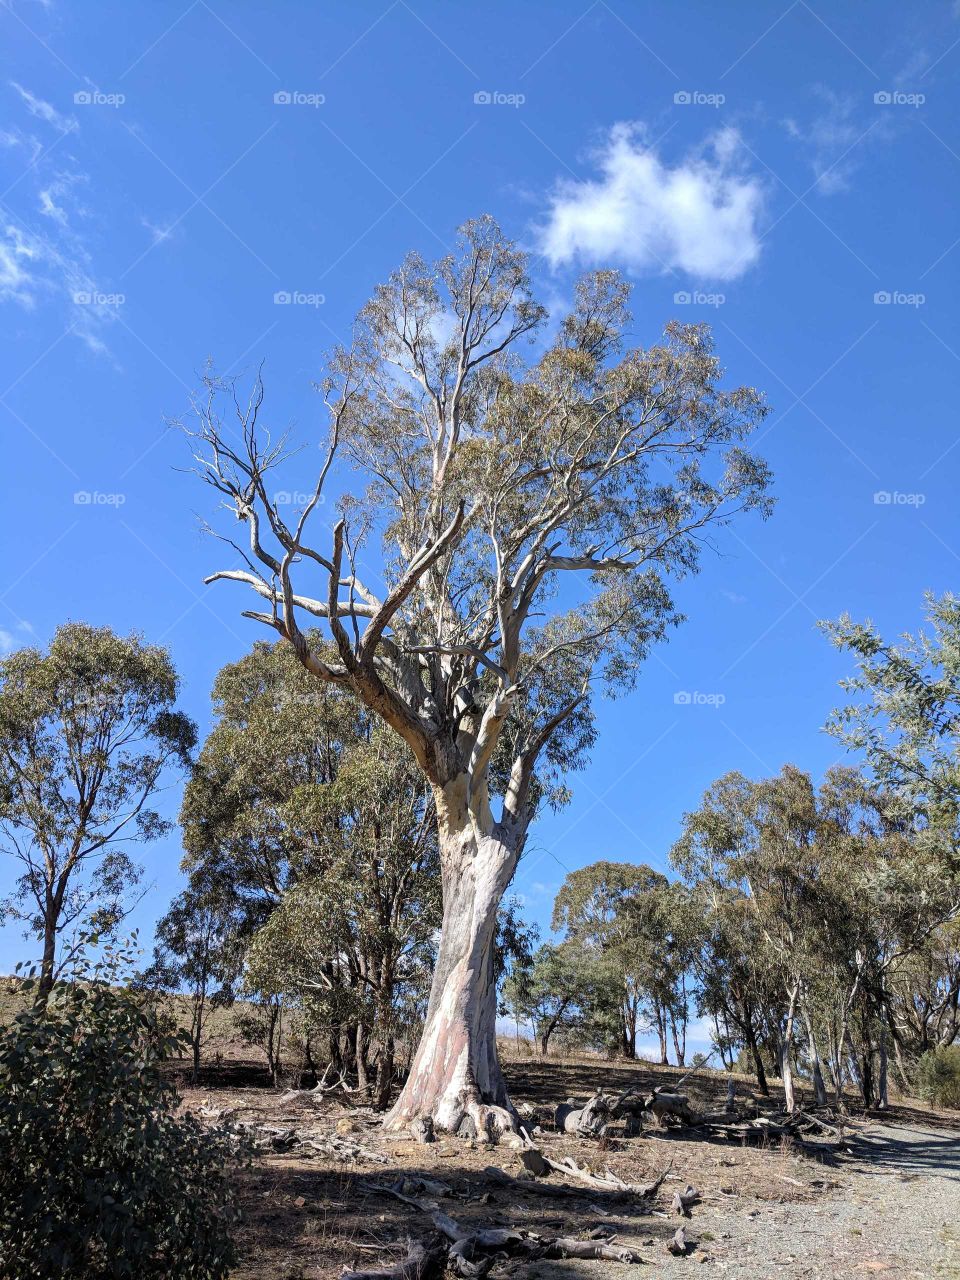 Standing alone in the Aussie Bush